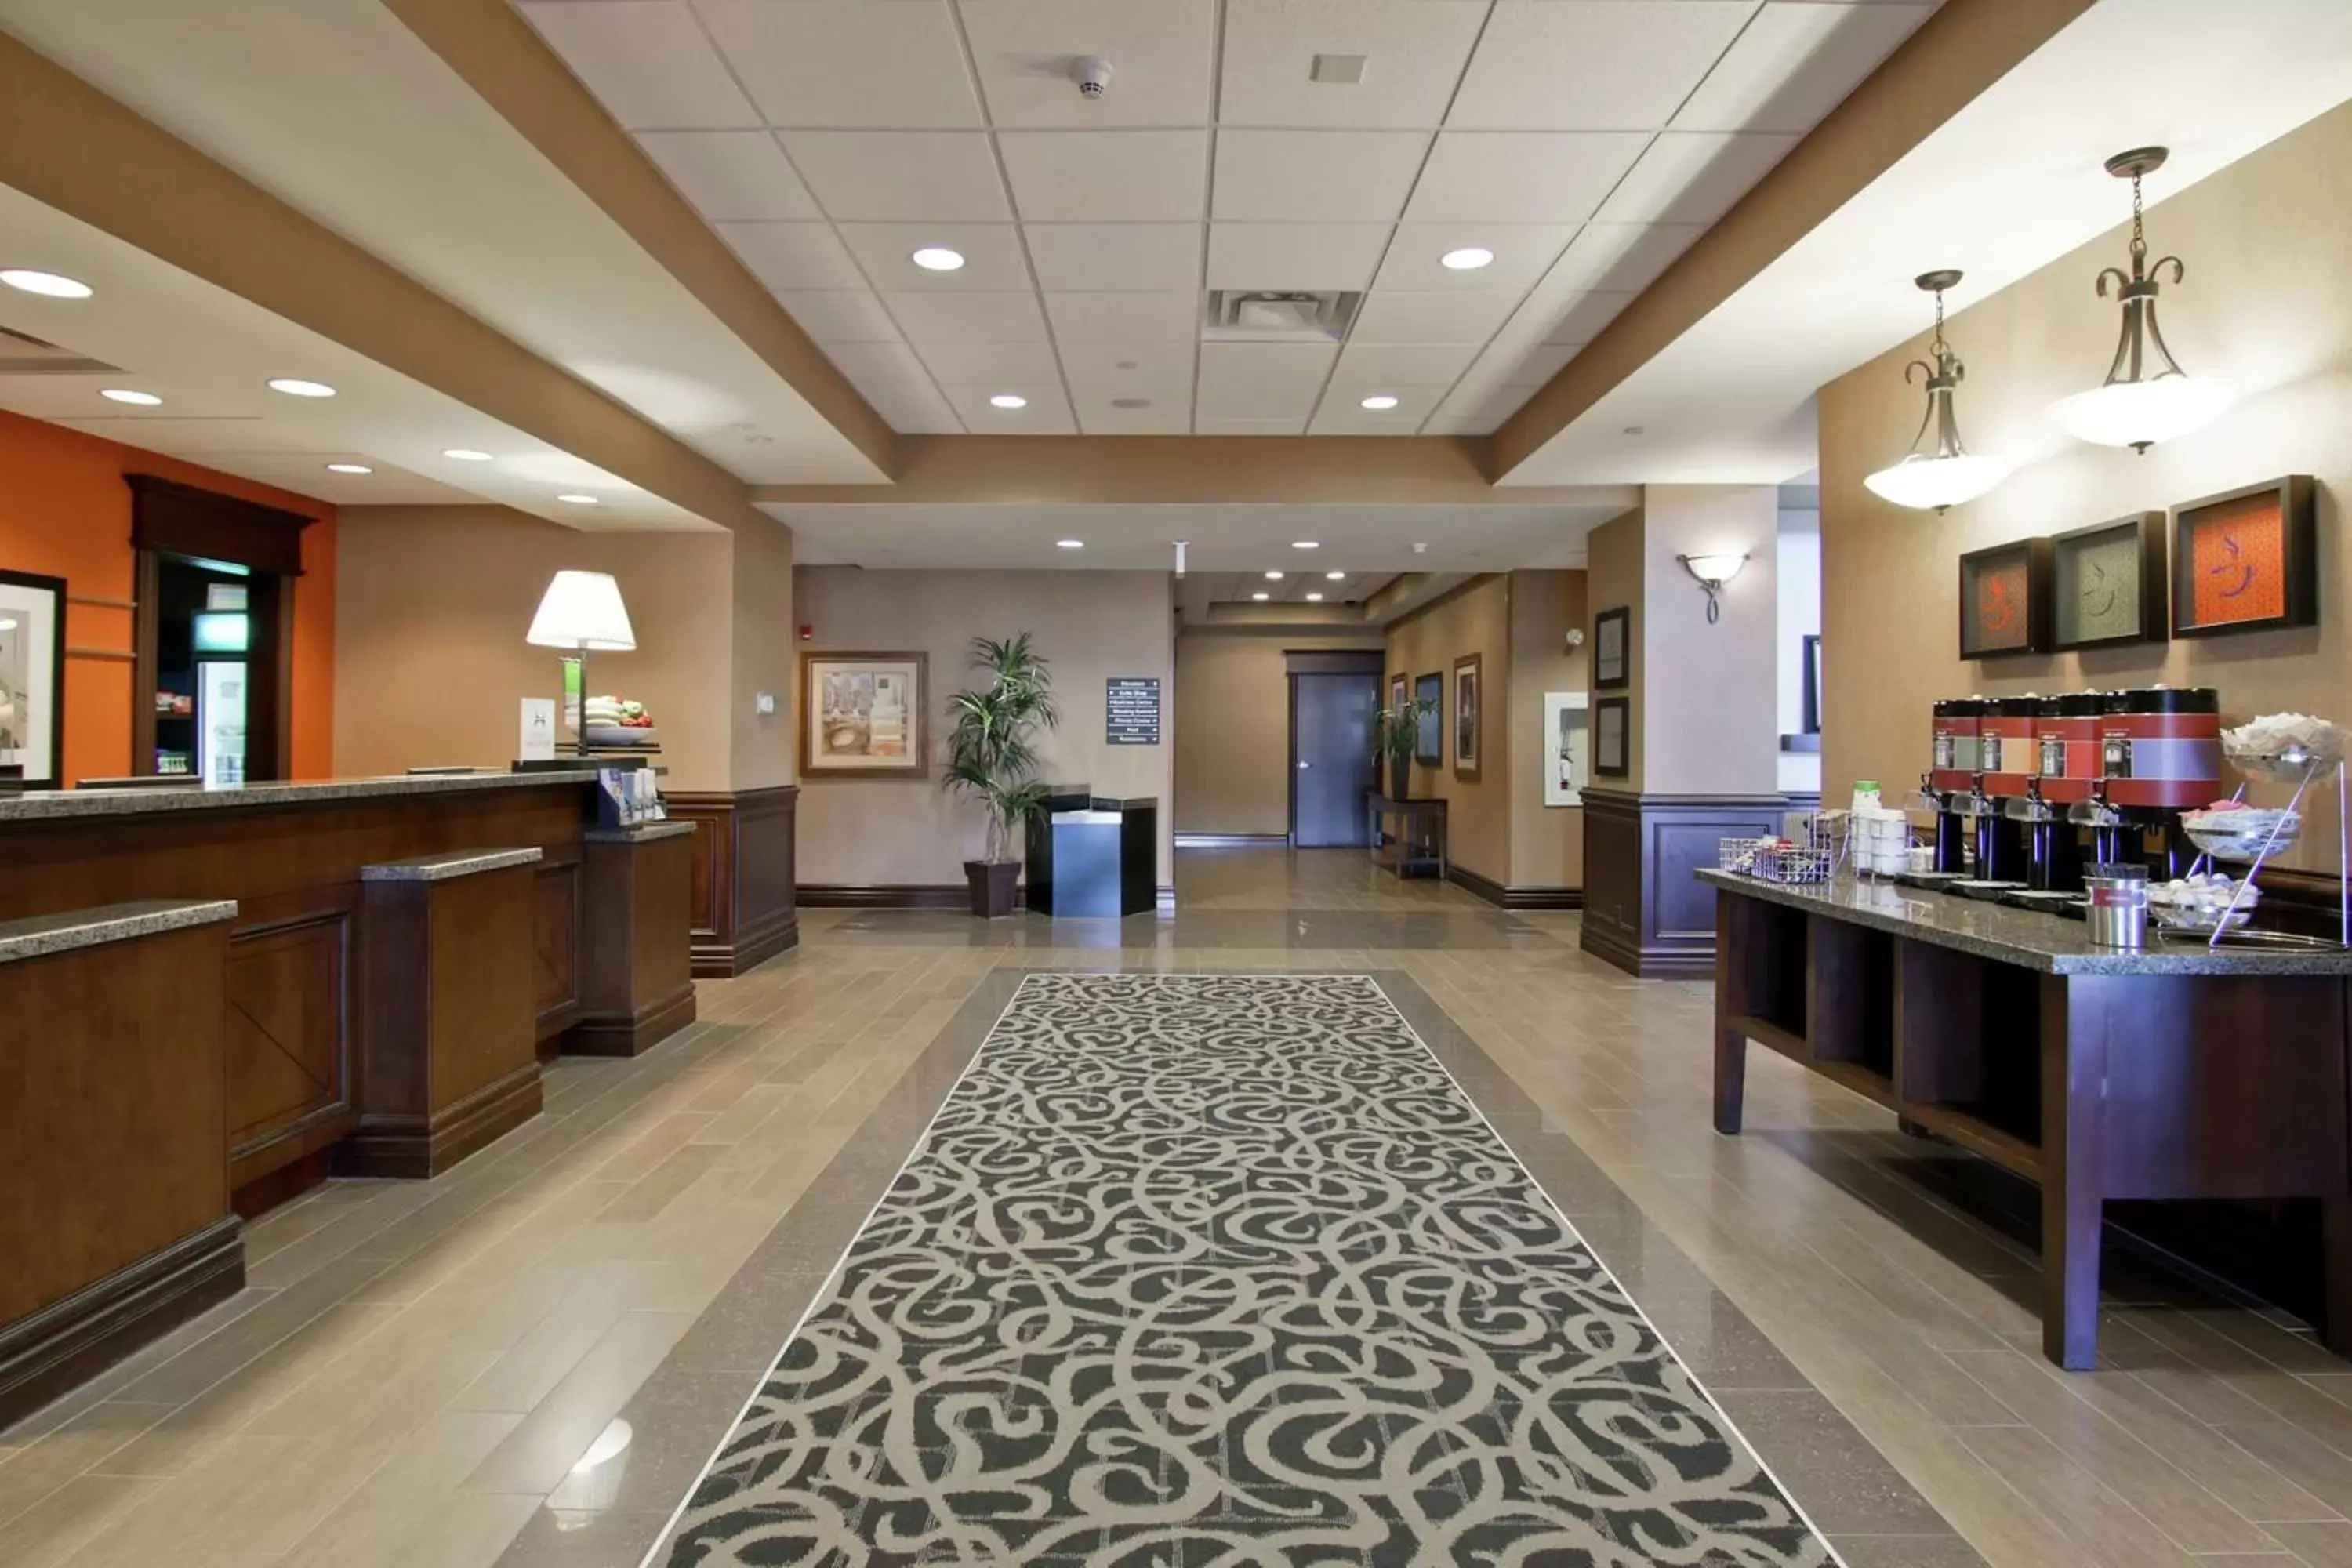 Lobby or reception in Hampton Inn by Hilton North Bay